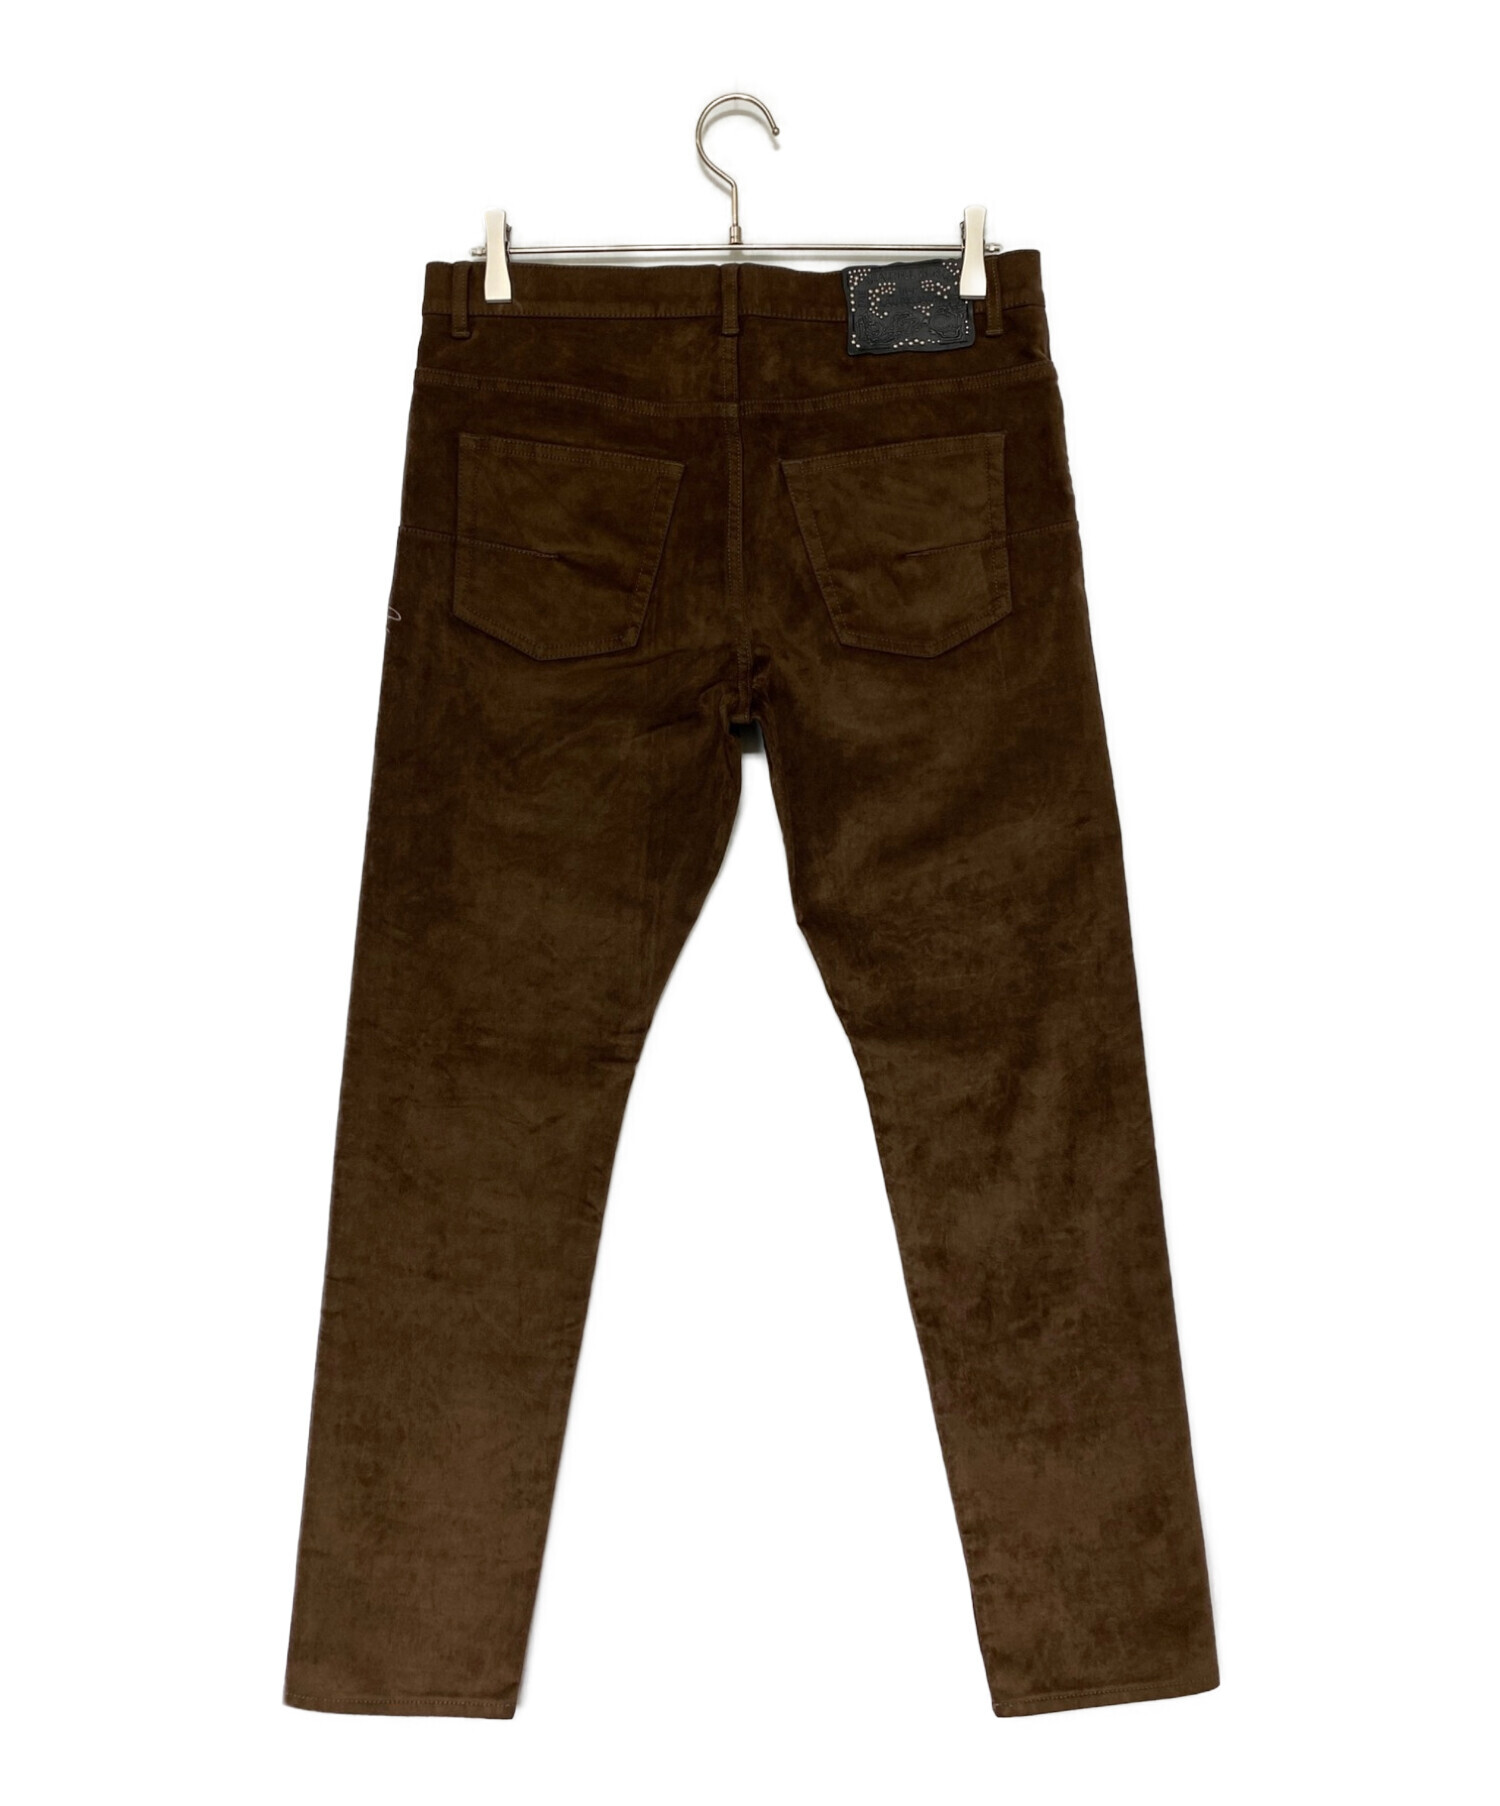 Dior (ディオール) cactus jack (カクタス・ジャック) Slimfit Jeans ブラウン サイズ:31